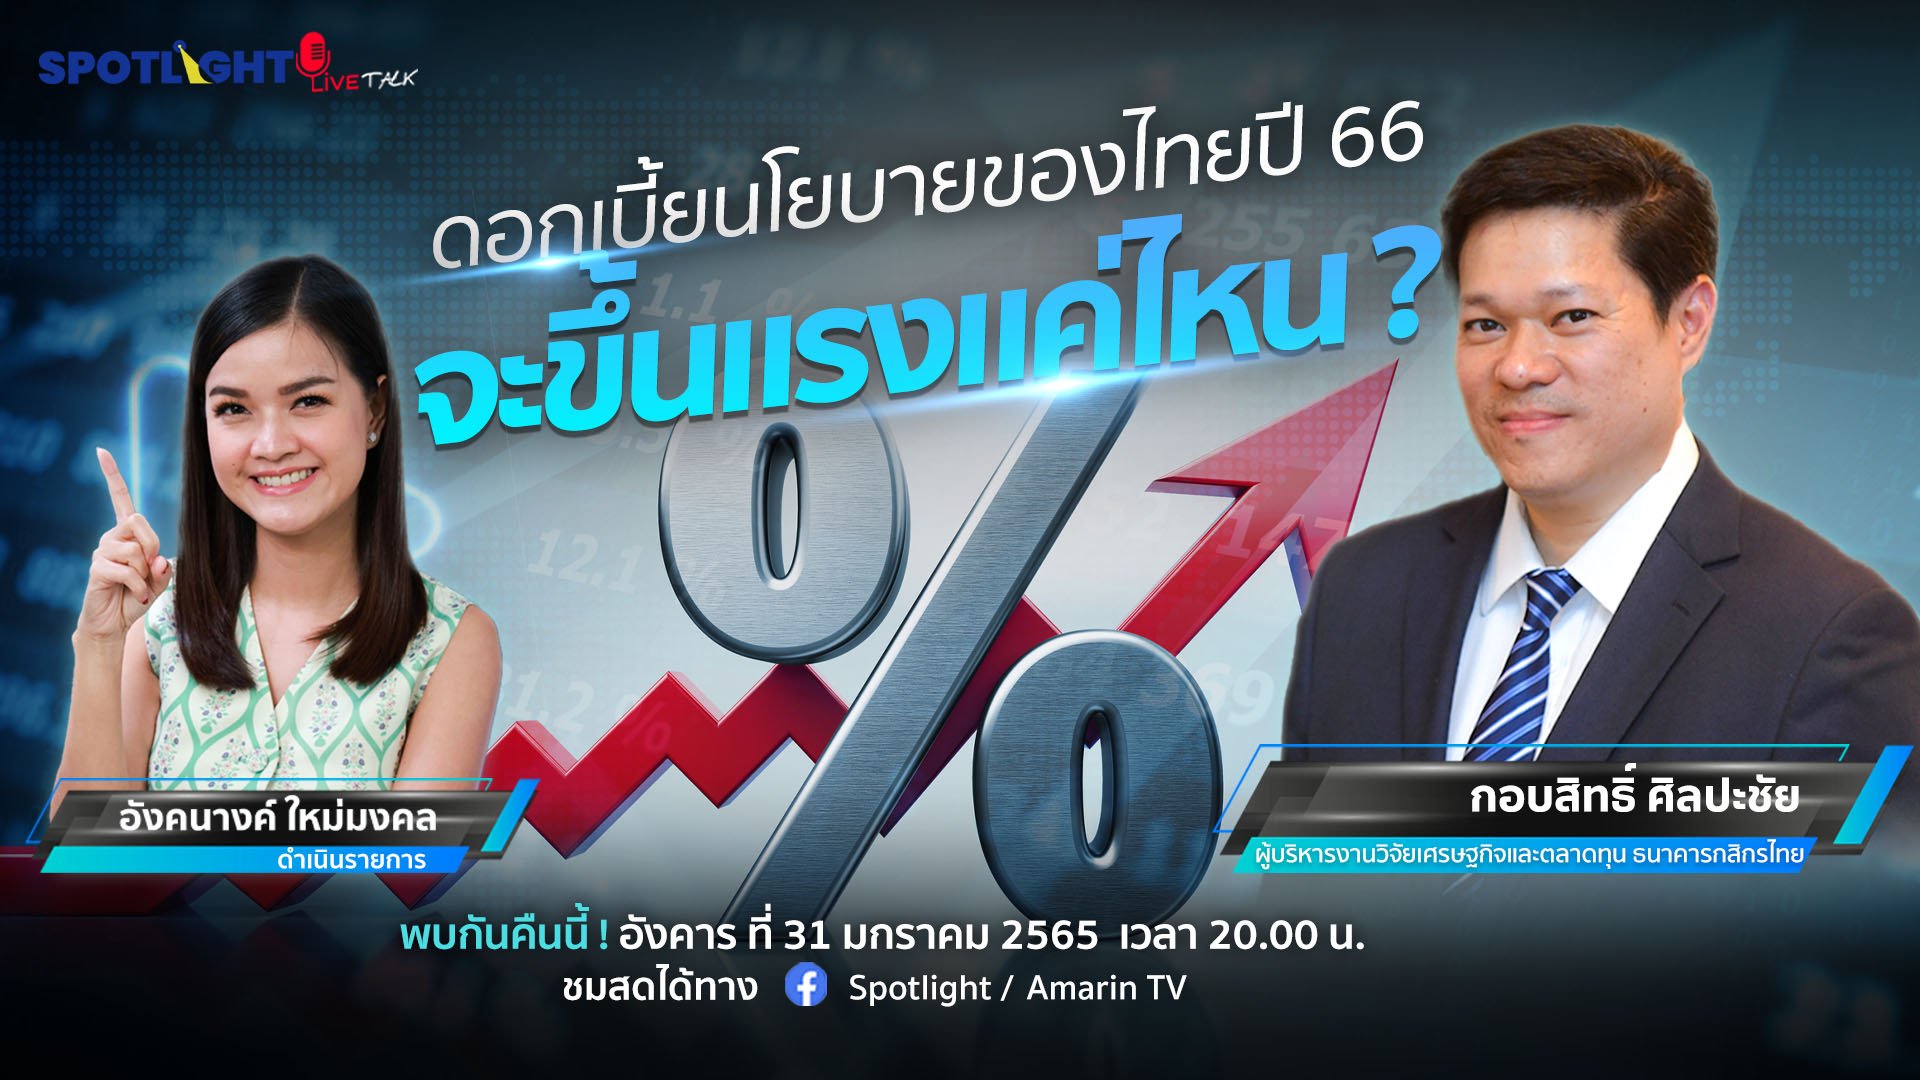 ดอกเบี้ยนโยบายของไทยปี 66 จะขึ้นแรงแค่ไหน ? | Spotlight | 31 ม.ค. 66 | AMARIN TVHD34